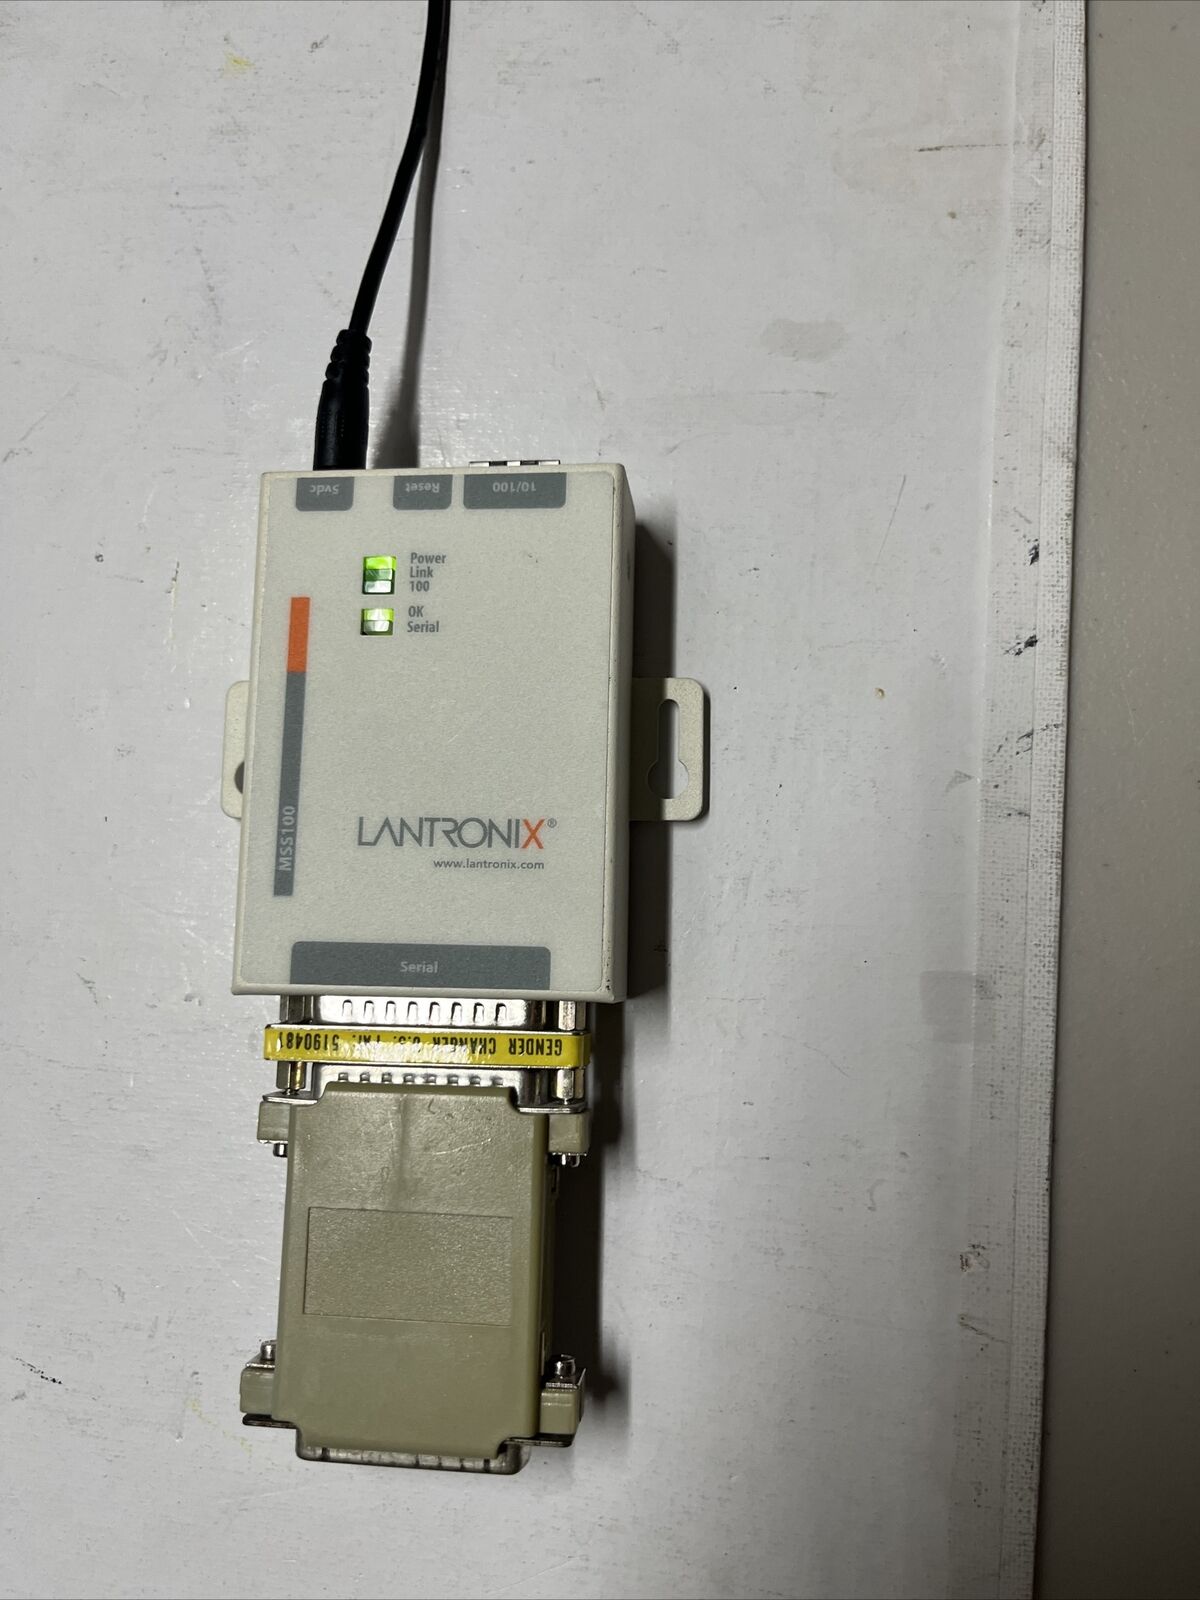 Lantronix - MSS100-21 - External Ethernet Device Server 